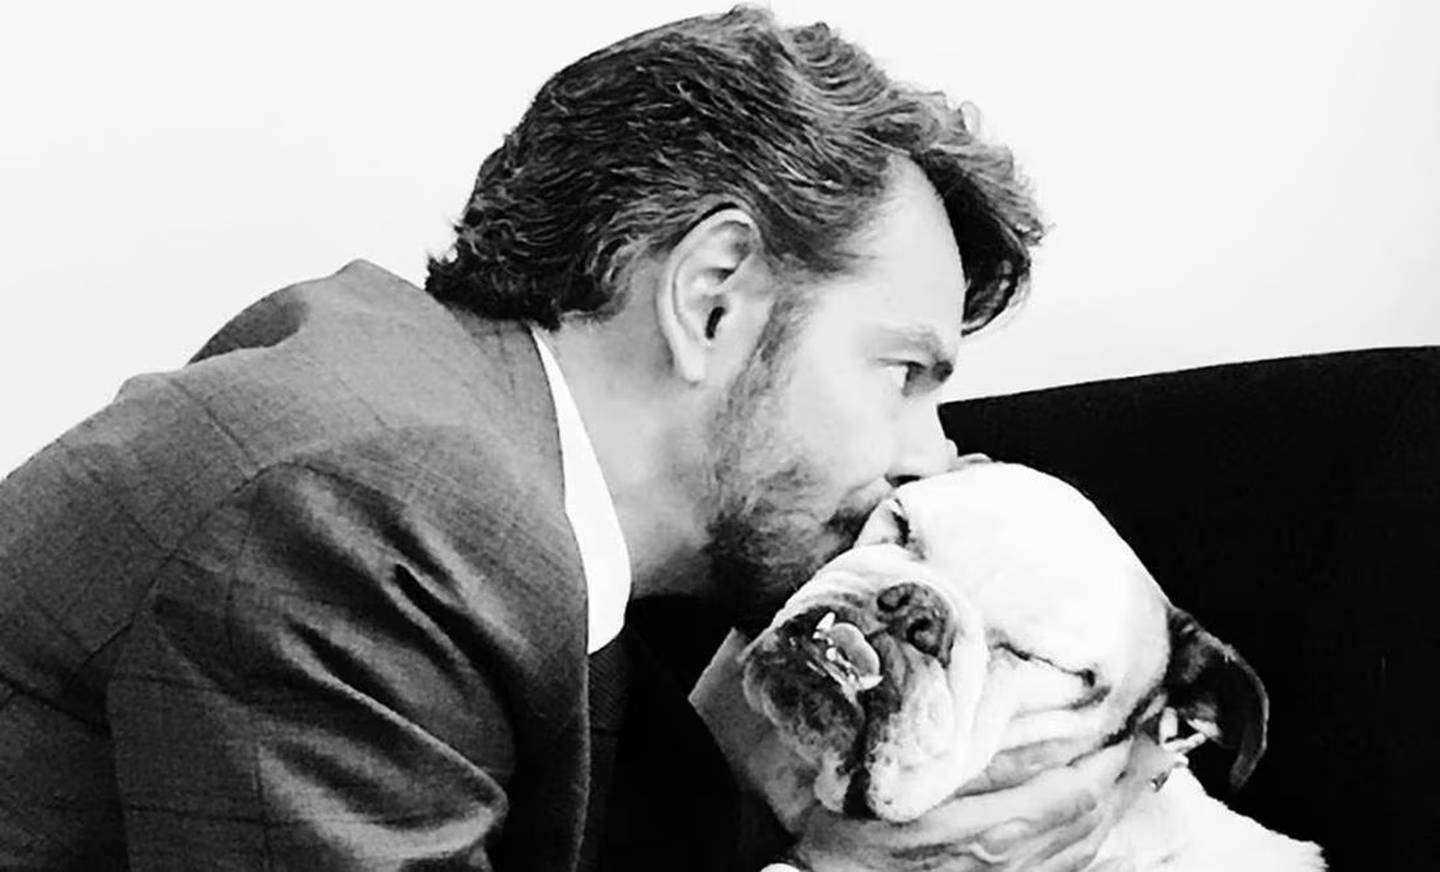 Eugenio Derbez y su perrita Fiona. El actor se encuentra profundamente triste por la partida de su mascota. Fiona convivió con la familia por 11 años